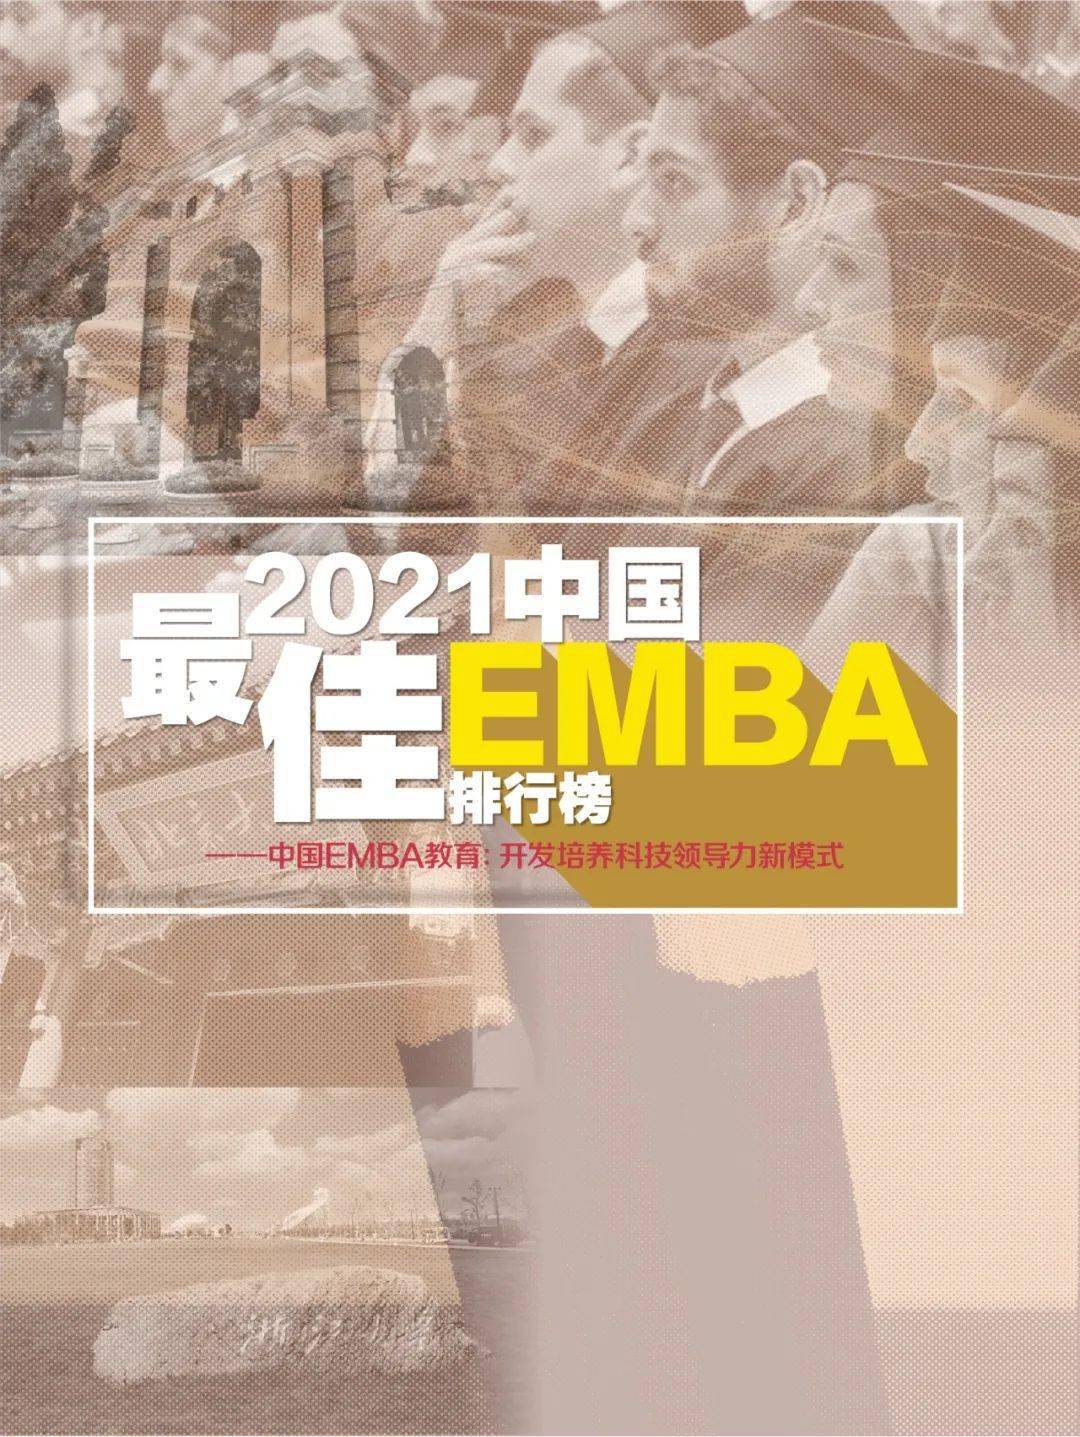 「emba哪家好」2021中国最佳EMBA排名-50门最推荐EMBA课程